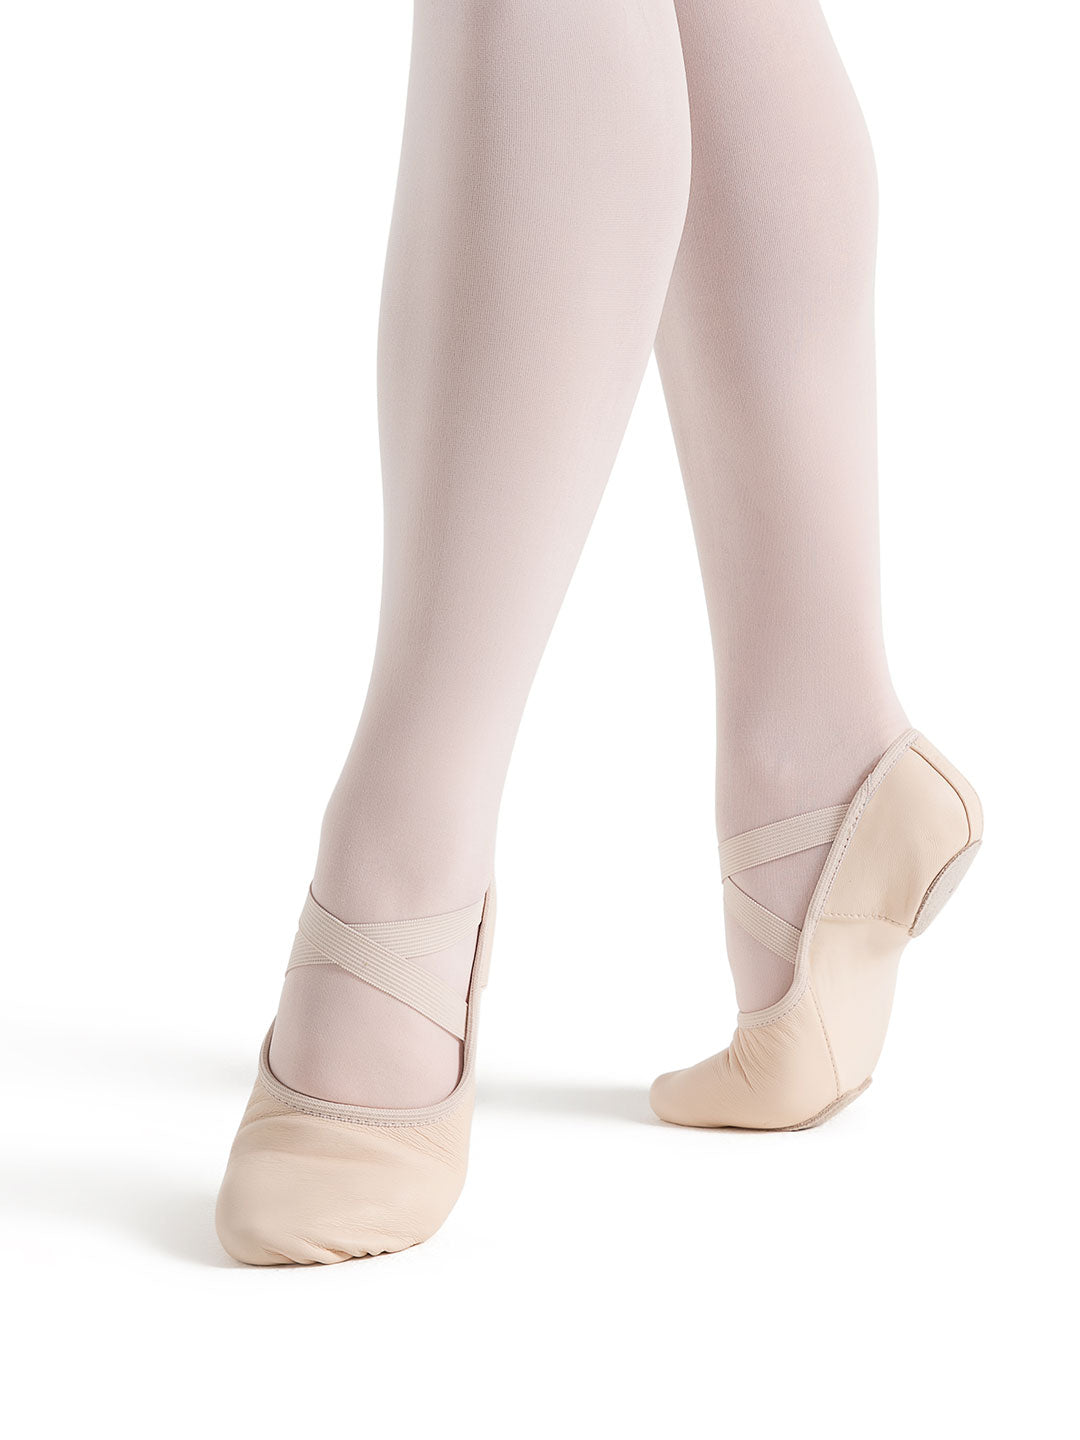 Hanami Adult Leather Ballet Shoe - Light Pink